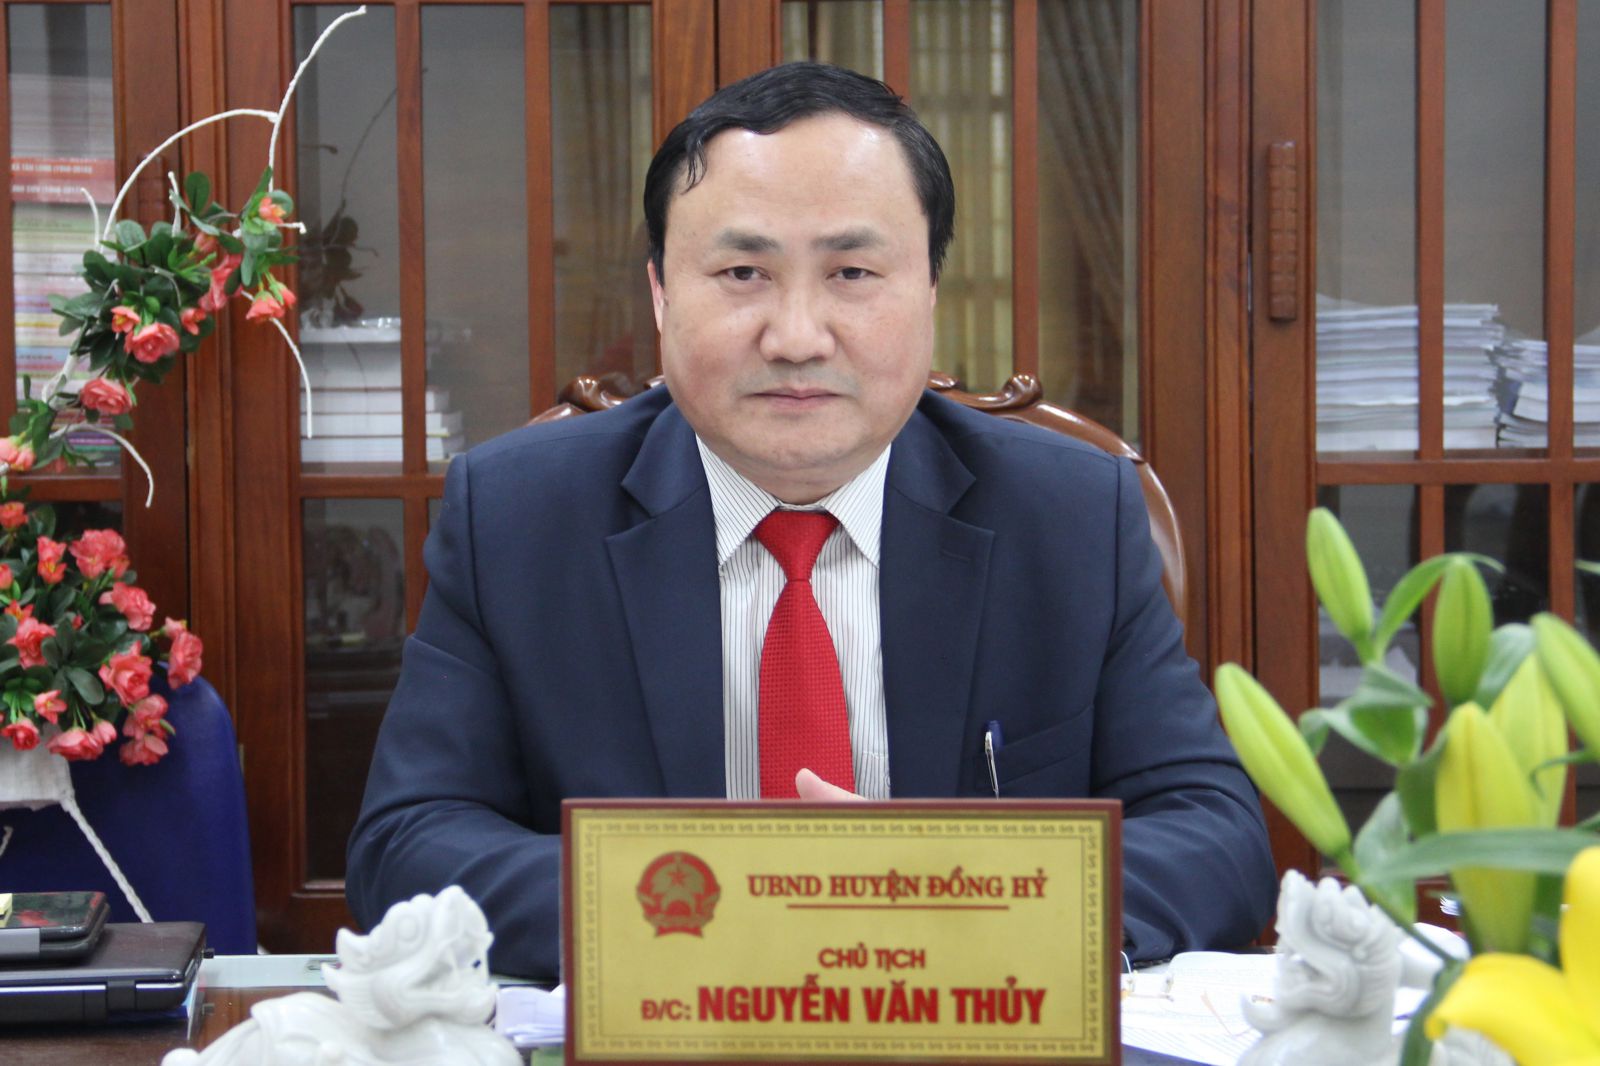 Ông Nguyễn Văn Thuỷ, Chủ tịch UBND huyện Đồng Hỷ (Thái Nguyên) 